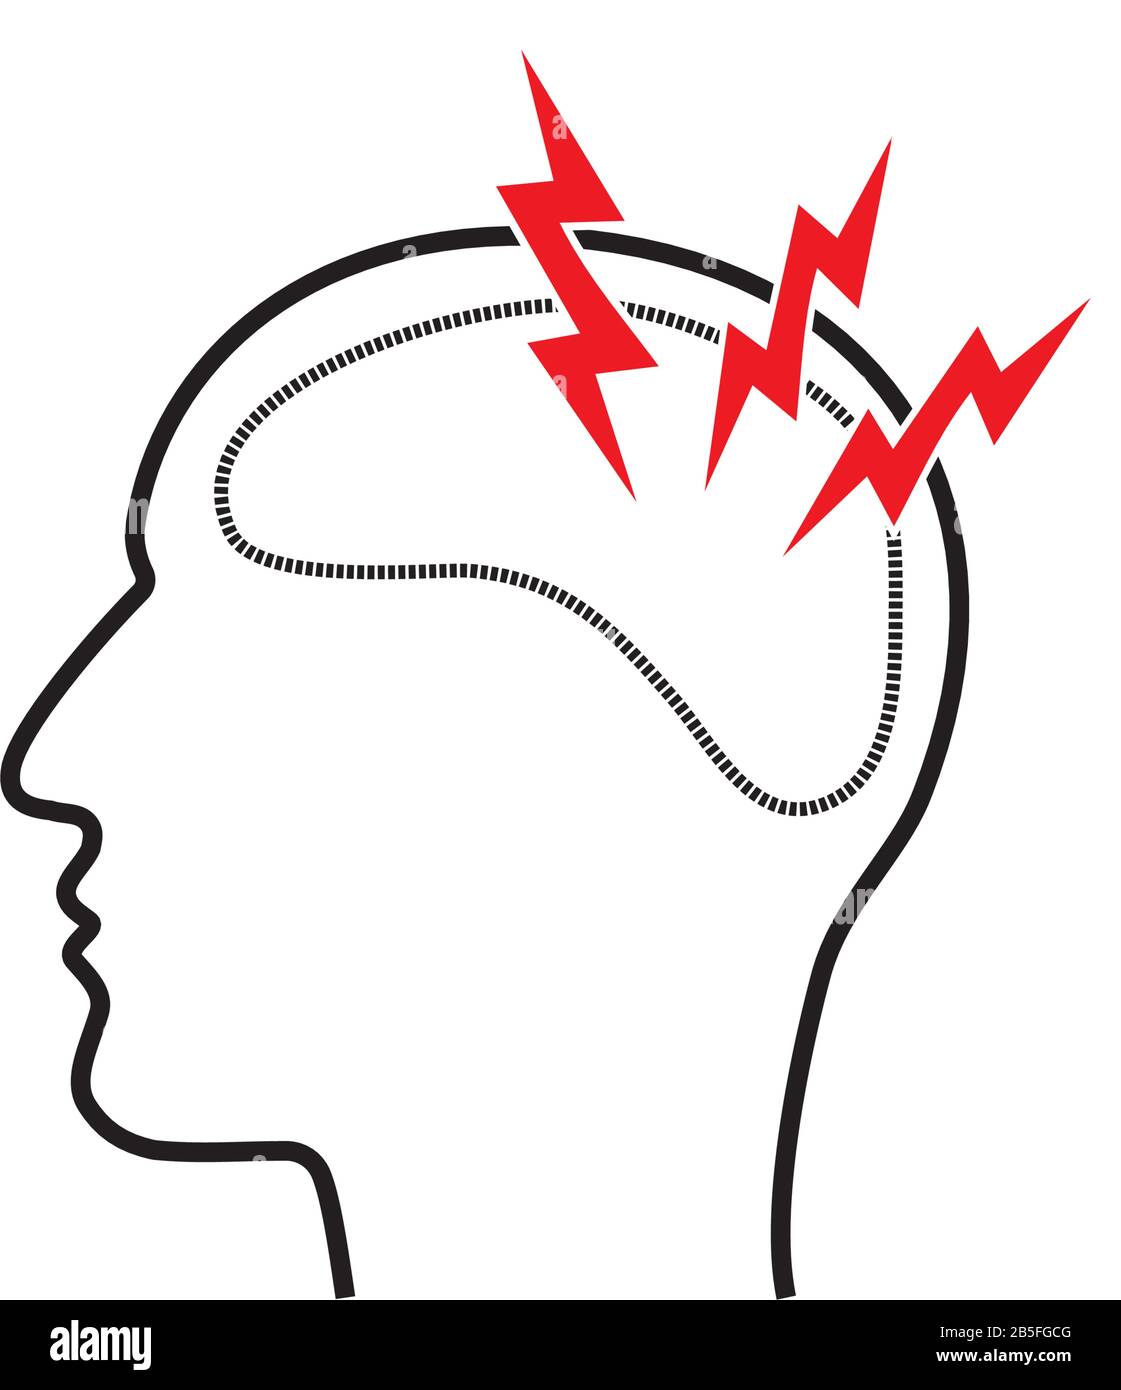 Migräne-Kopfschmerzen-Schmerzen und Bildkonzept für Erkrankungen des zentralen Nervensystems. Profilumriss des menschlichen Kopfes mit drei roten Blitzen im weißen Hintergrund. Ve Stock Vektor